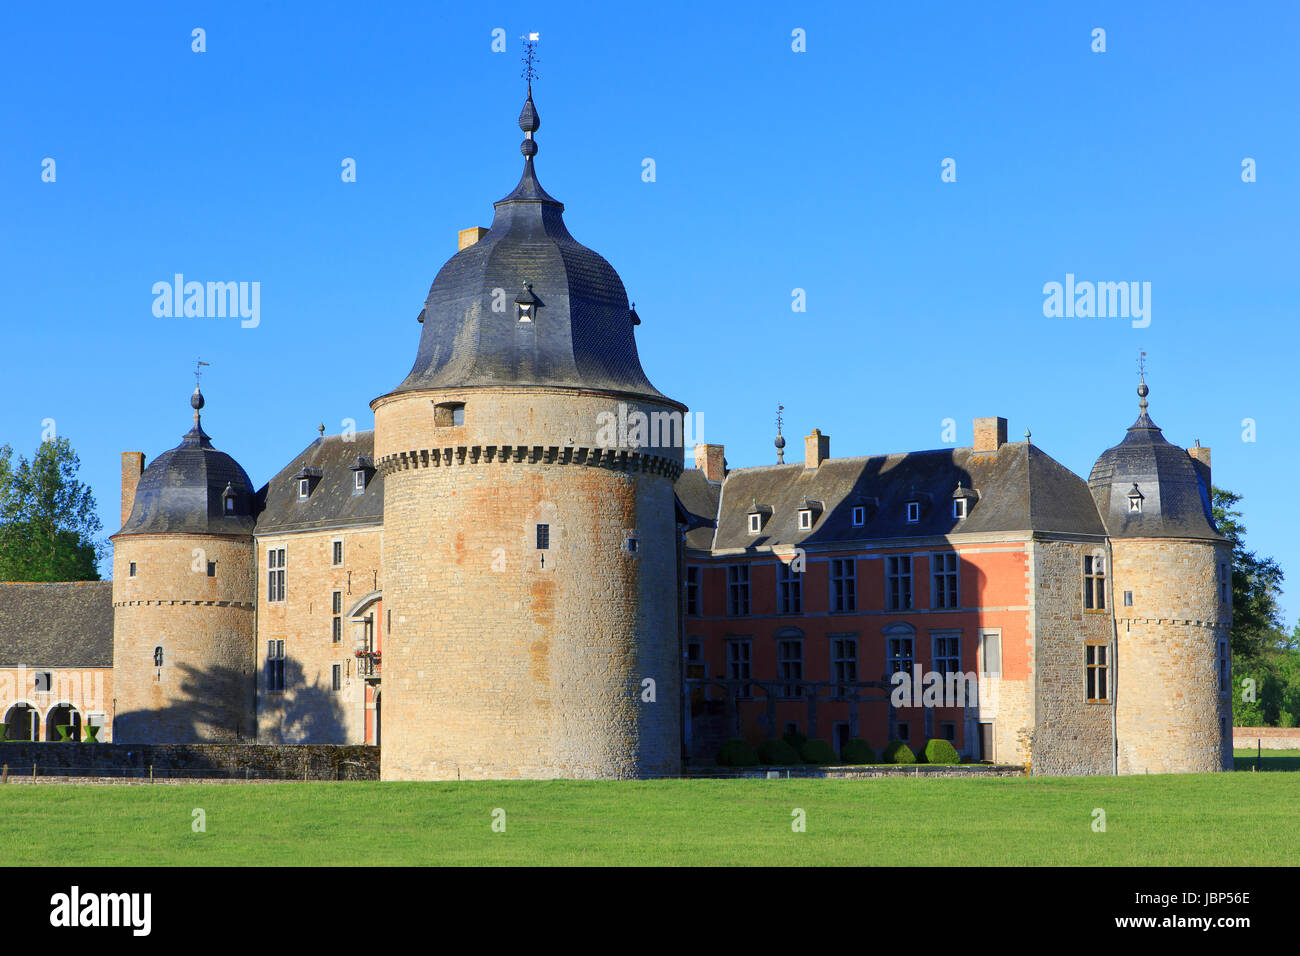 The Renaissance Chateau de Lavaux-Sainte-Anne (1450) in Lavaux-Sainte-Anne, Belgium Stock Photo